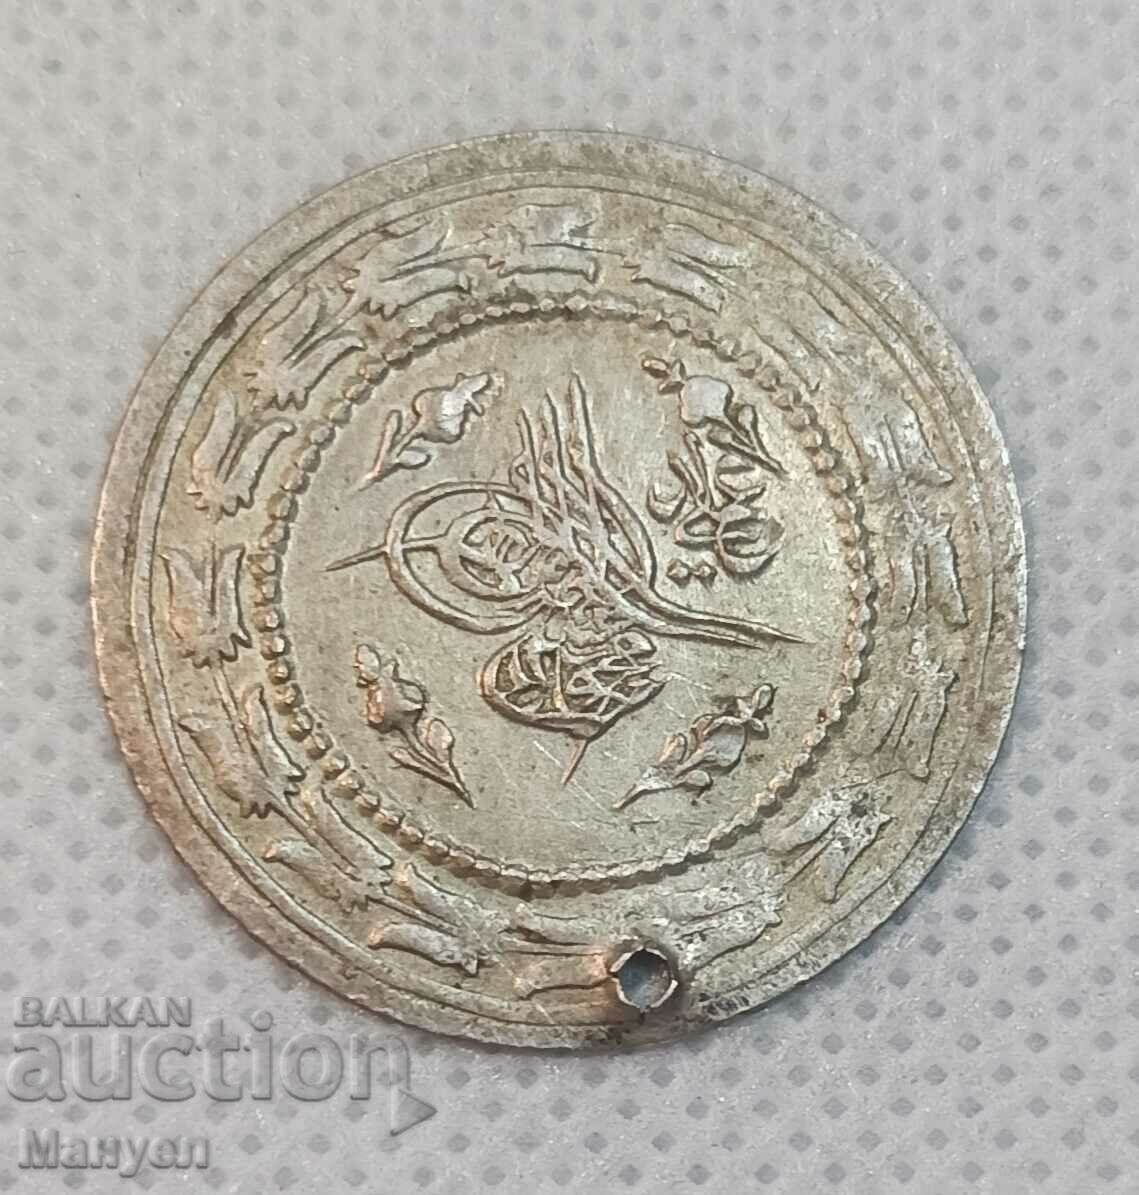 Ottoman silver coin.